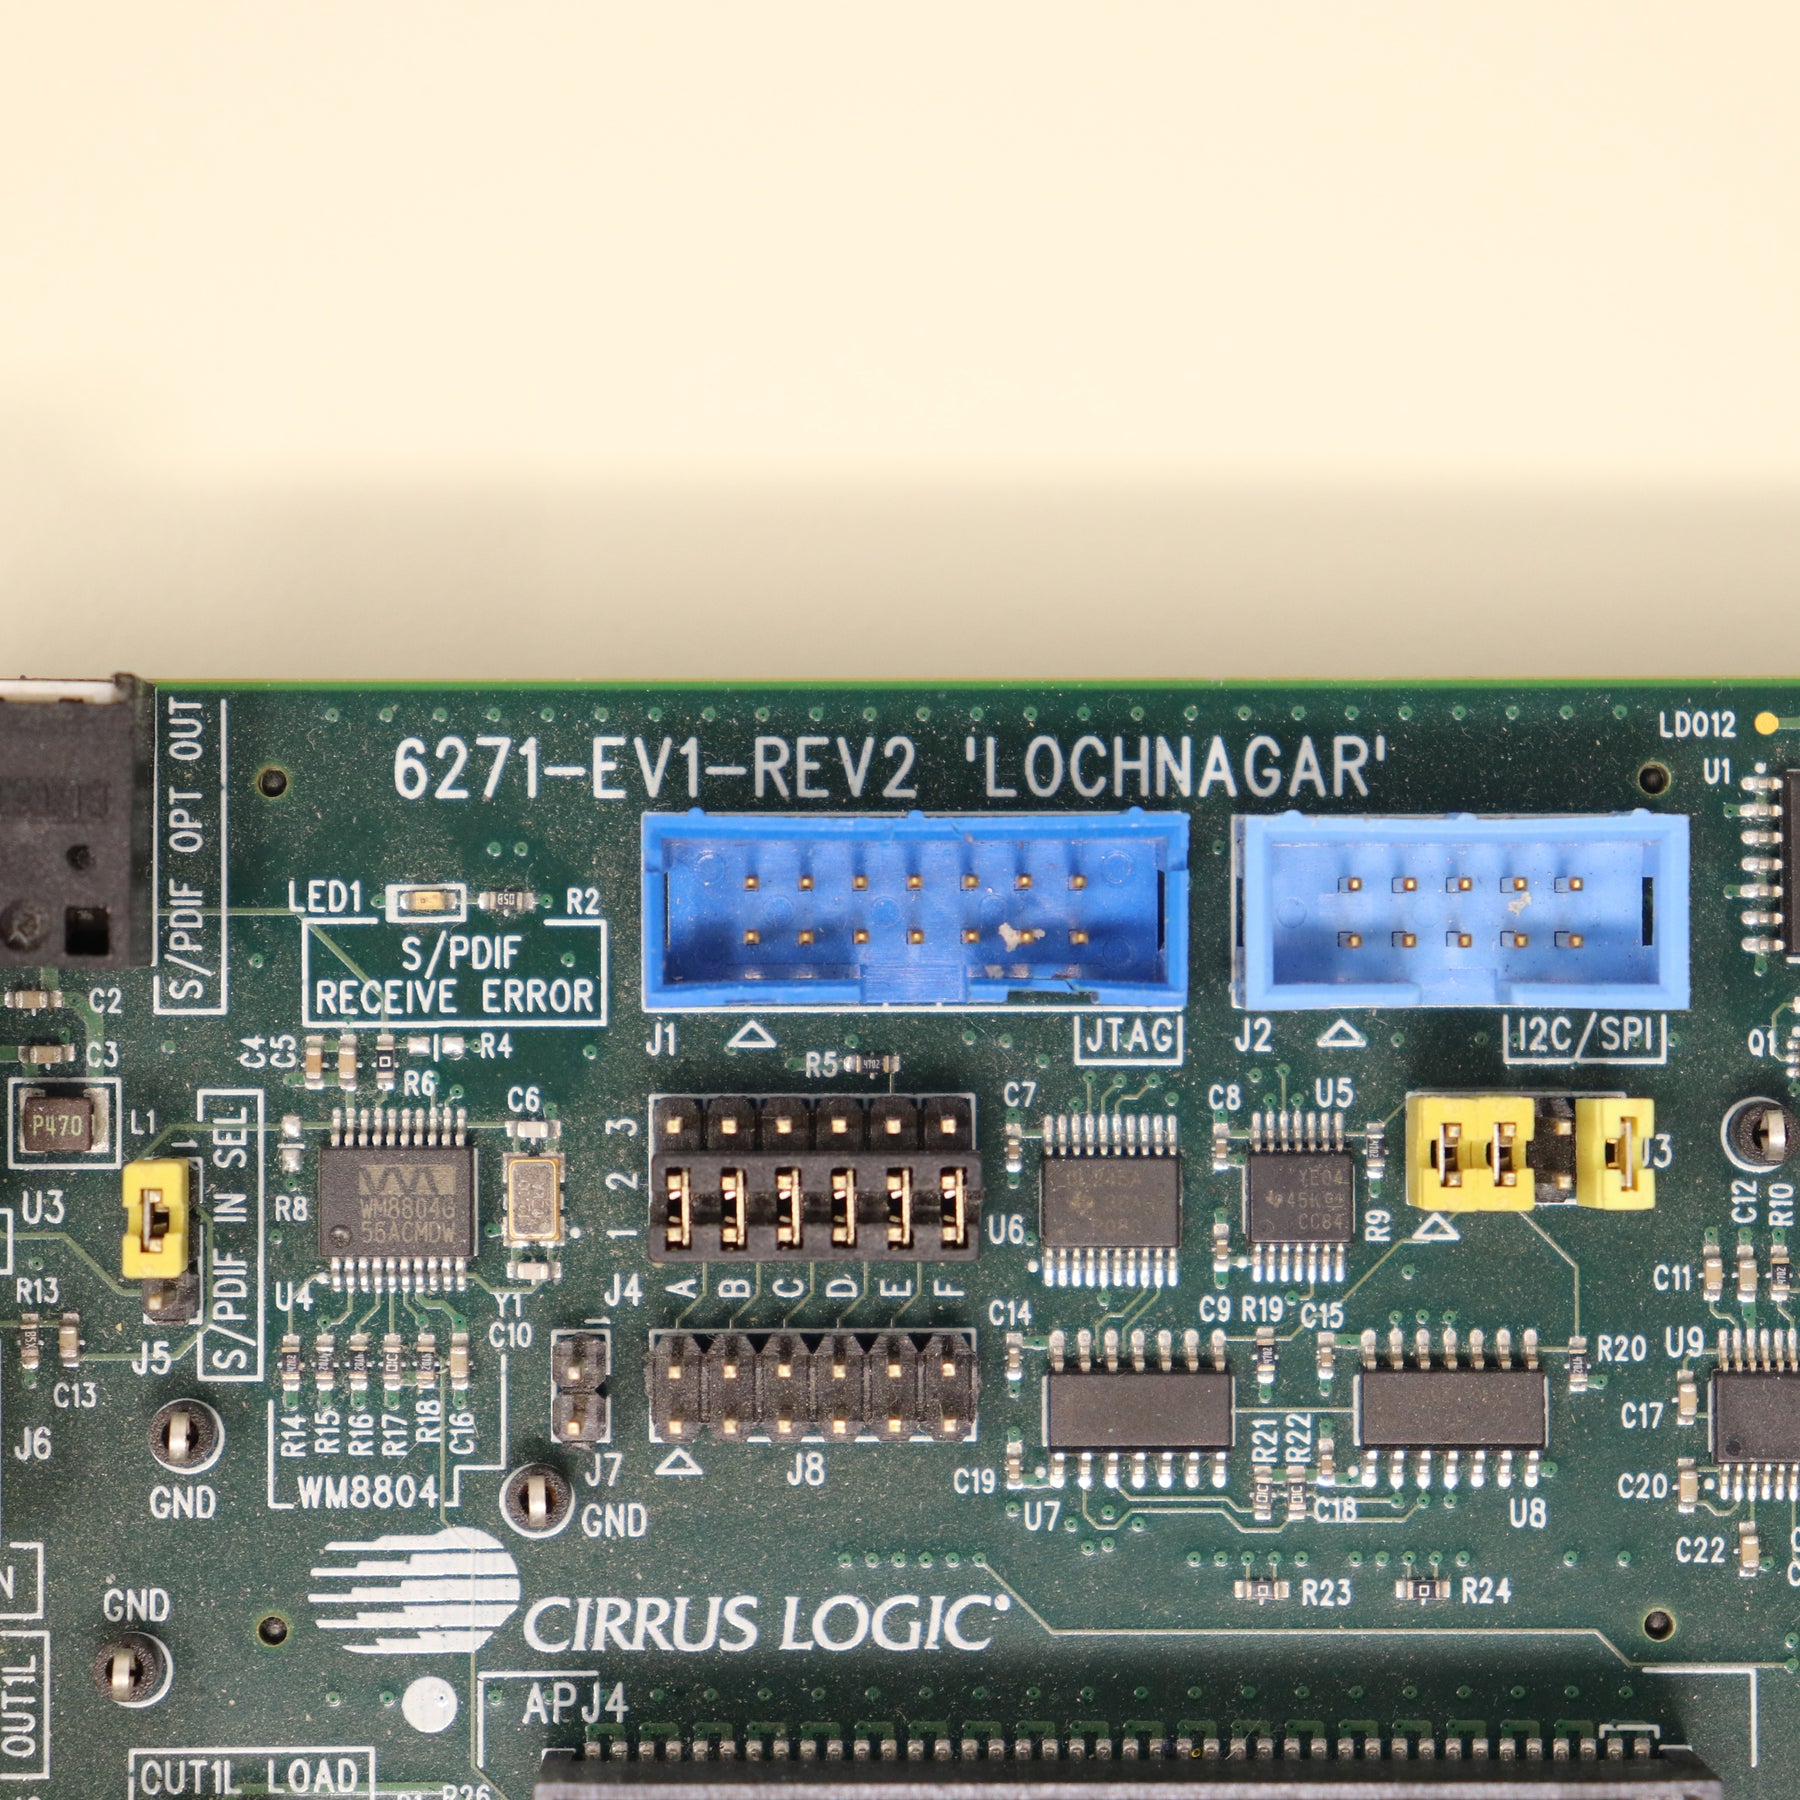 Cirrus Logic CDB6271-1 "Lochnagar 1" Mainboard for CODEC Audio Evaluation